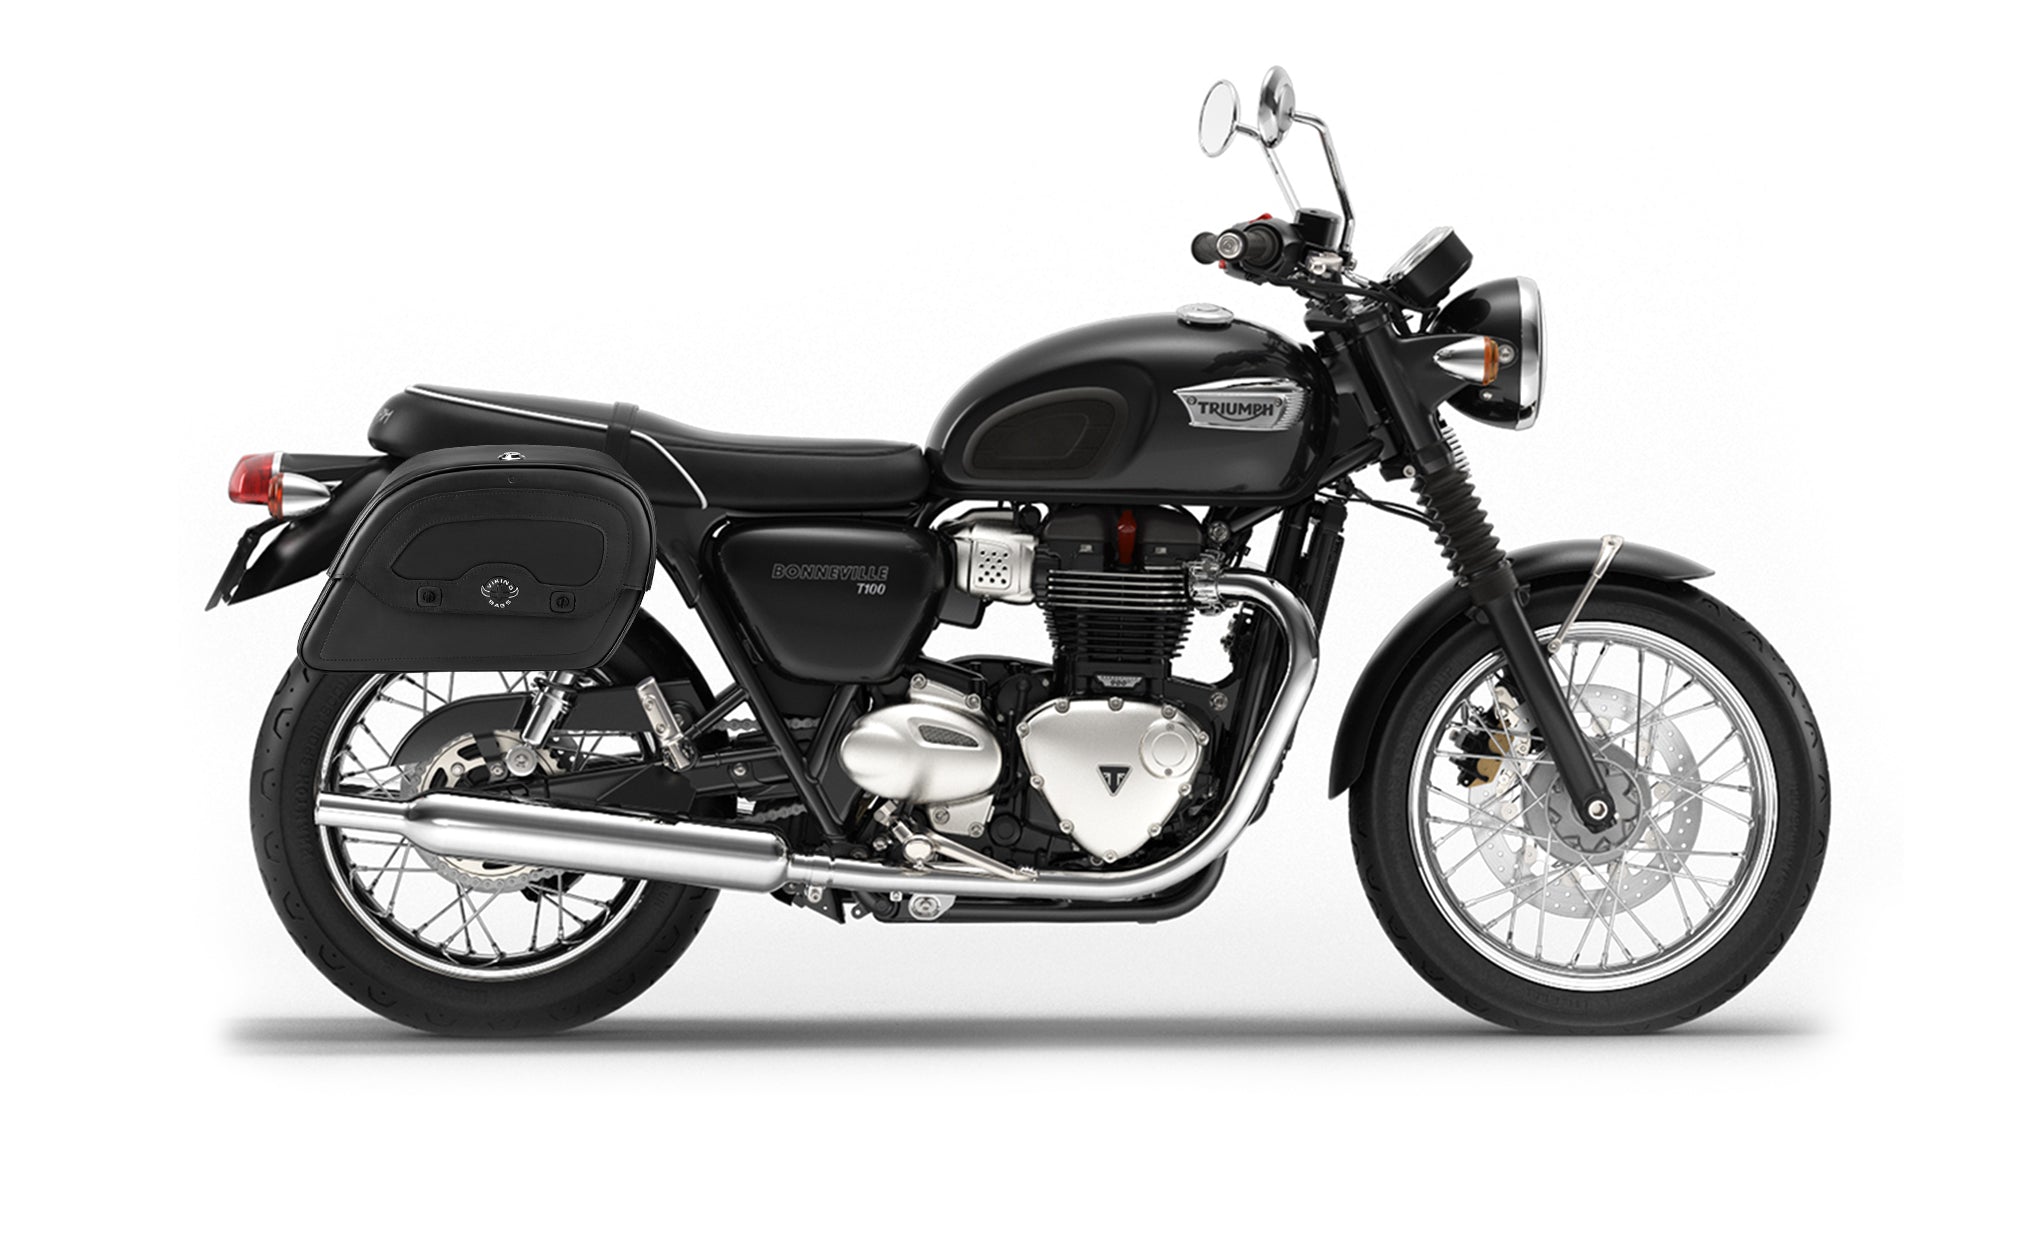 28L - Warrior Medium Quick-Mount Triumph Bonneville T100 Motorcycle Saddlebags @expand